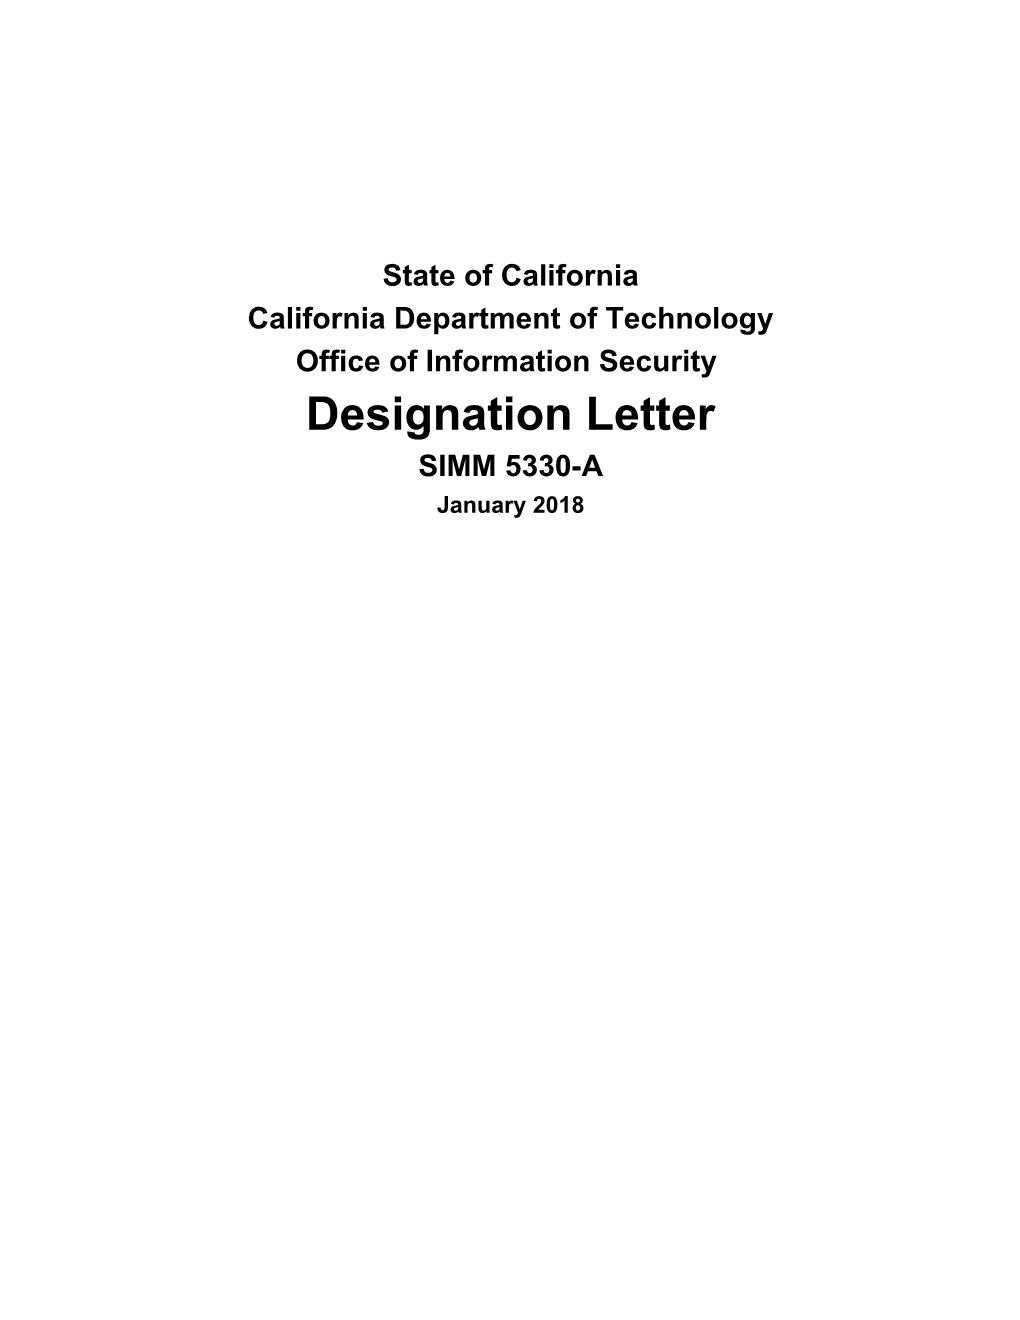 SIMM 5330-A Designation Letter